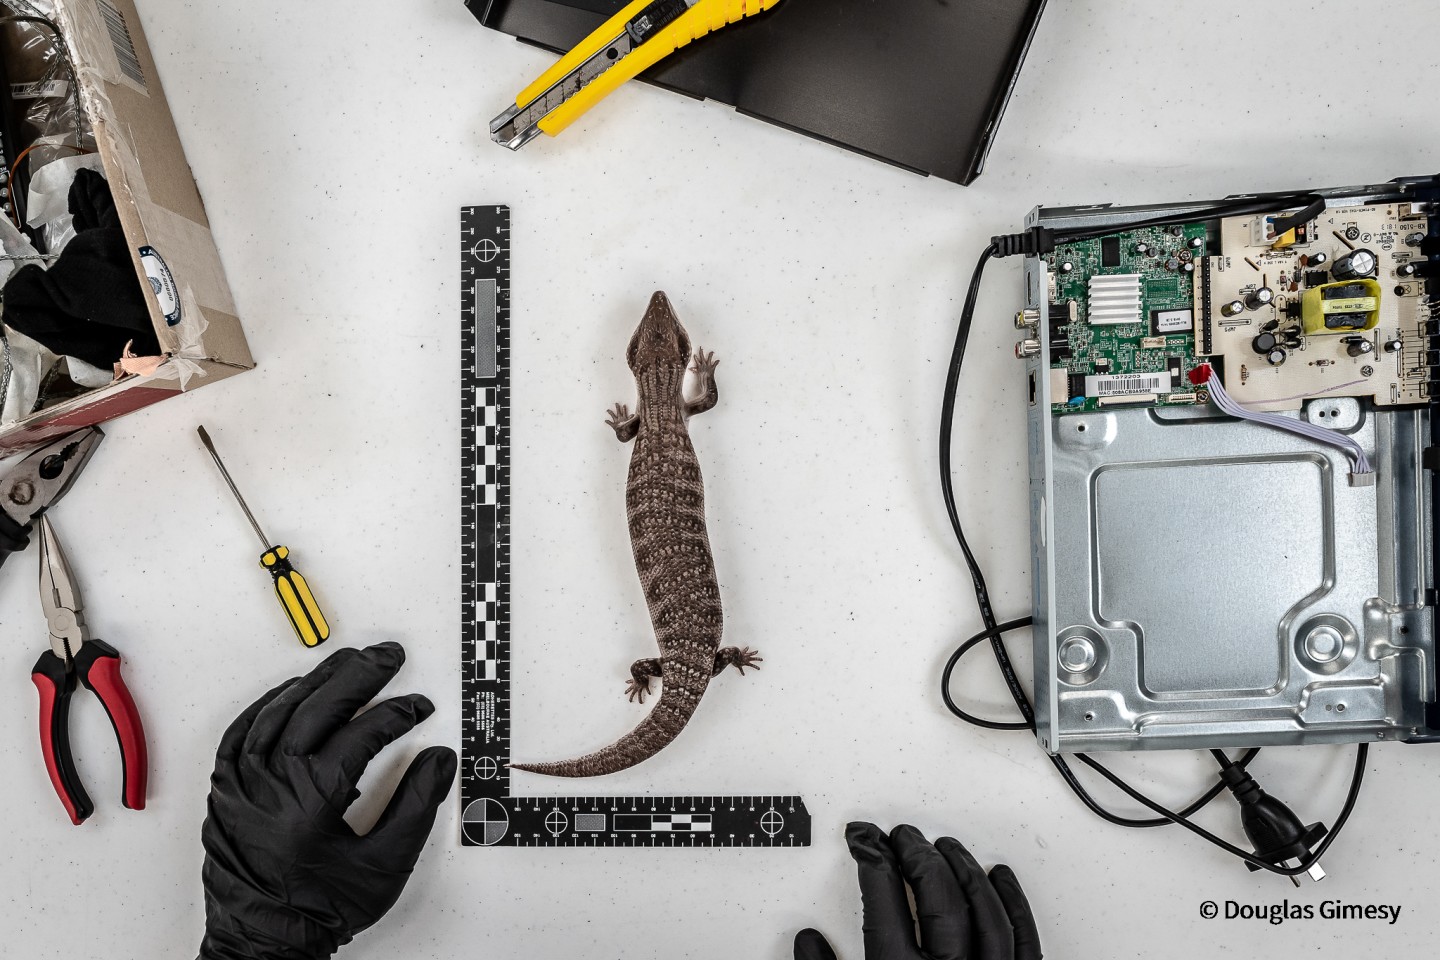 Победитель - Наше влияние. Офицер по охране дикой природы измеряет одну из двух исполинские ящериц, найденных в DVD-плеере. Фото: Douglas Gimesy